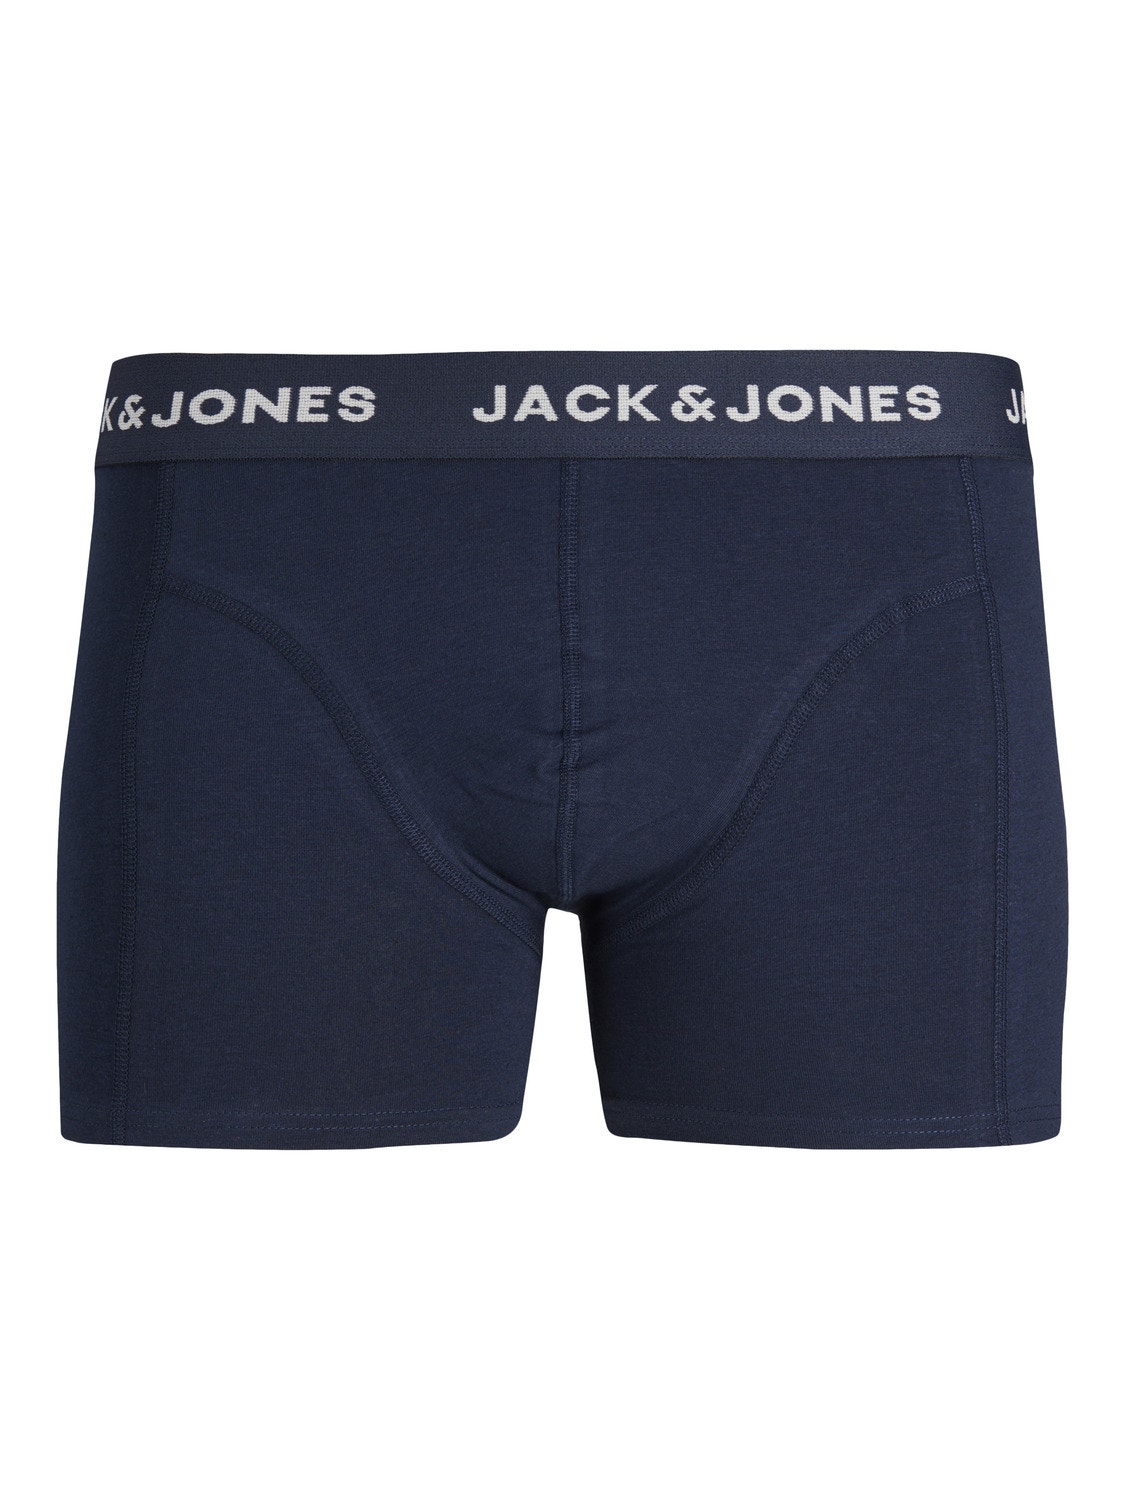 Jack & Jones Plus Size Paquete de 3 Calções de banho -Navy Blazer - 12257400